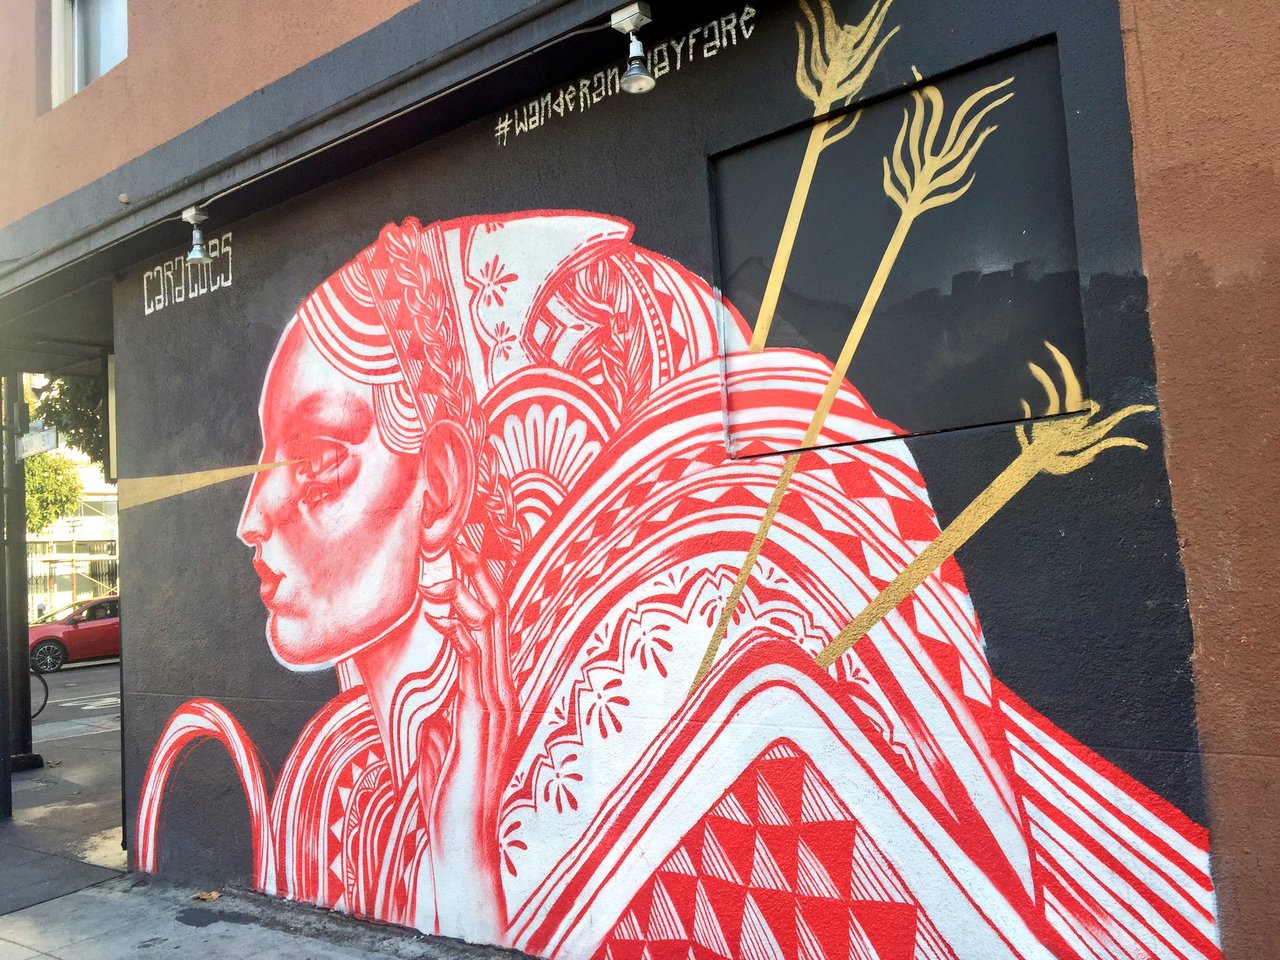 Fabulous #streetart by Caratoes #sanfrancisco #art #mural https://t.co/yKAelpRmRC